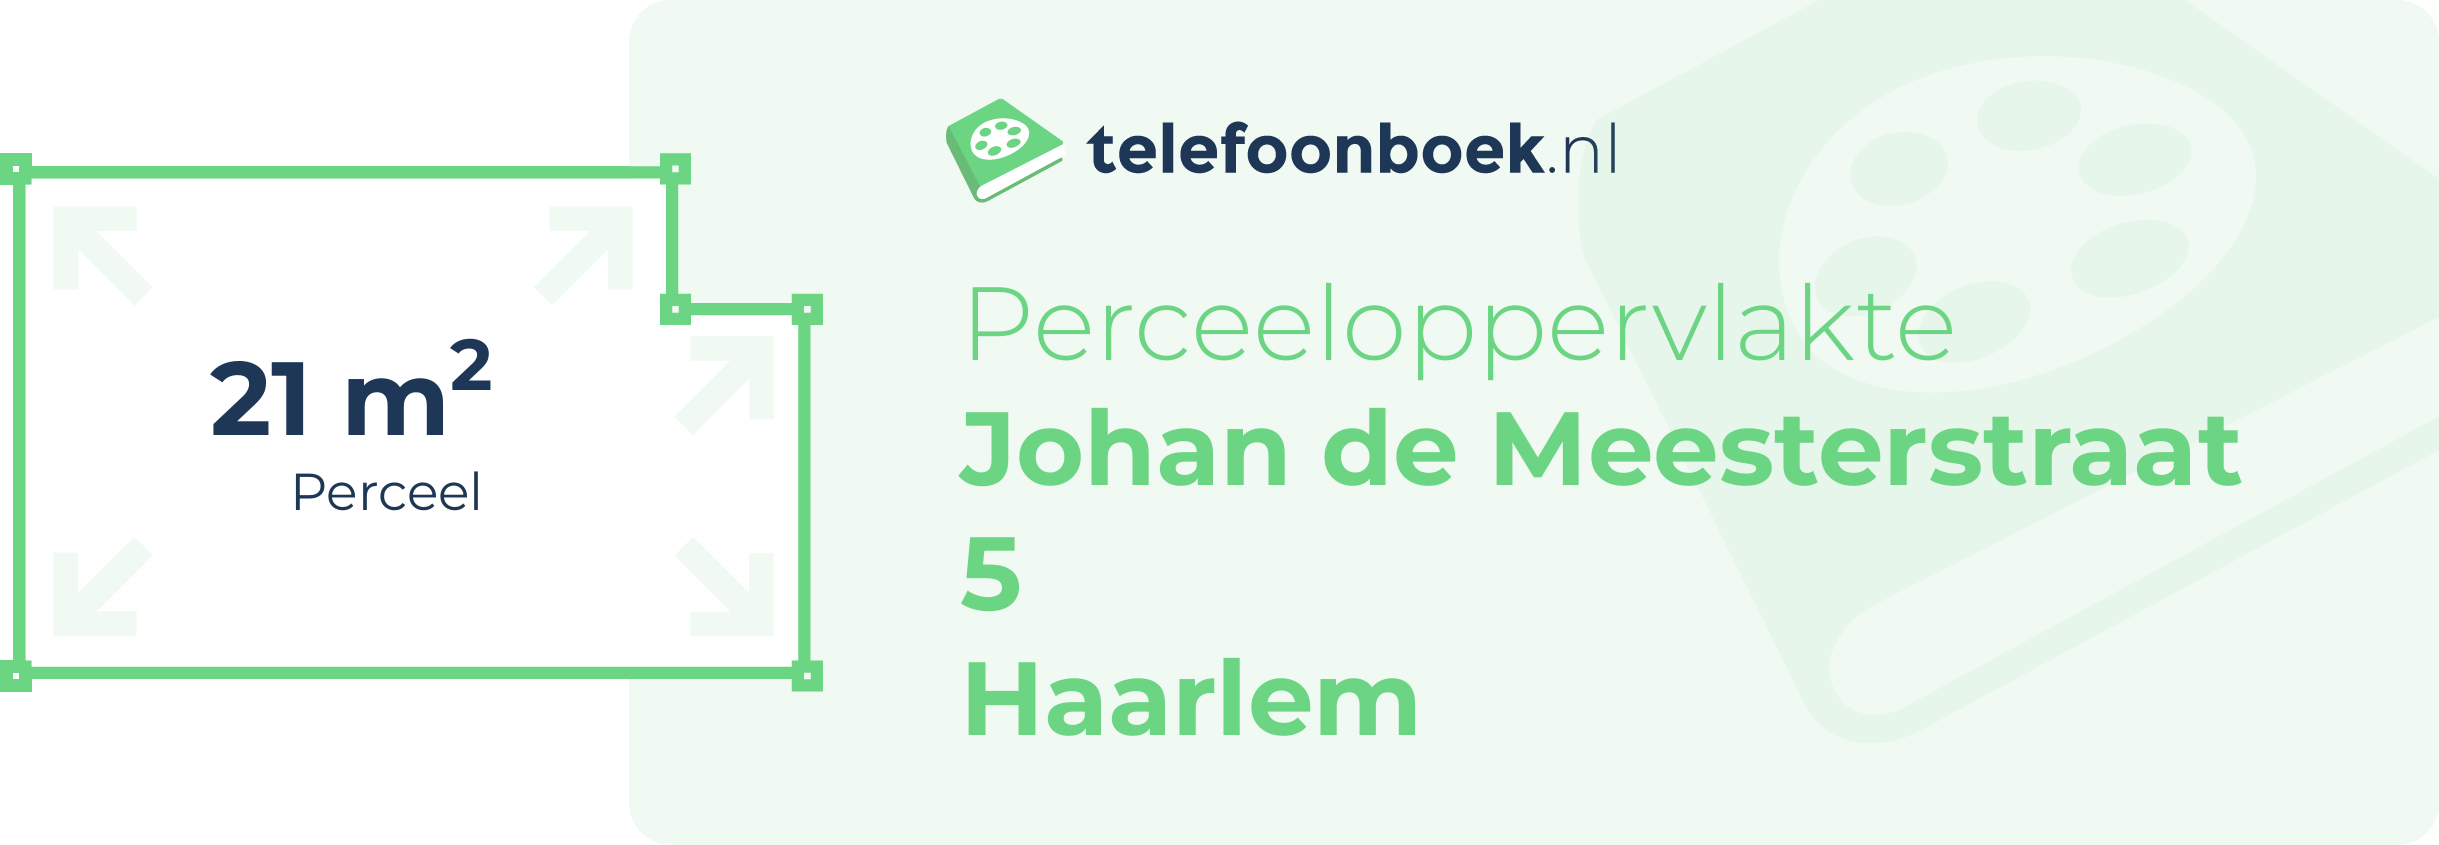 Perceeloppervlakte Johan De Meesterstraat 5 Haarlem